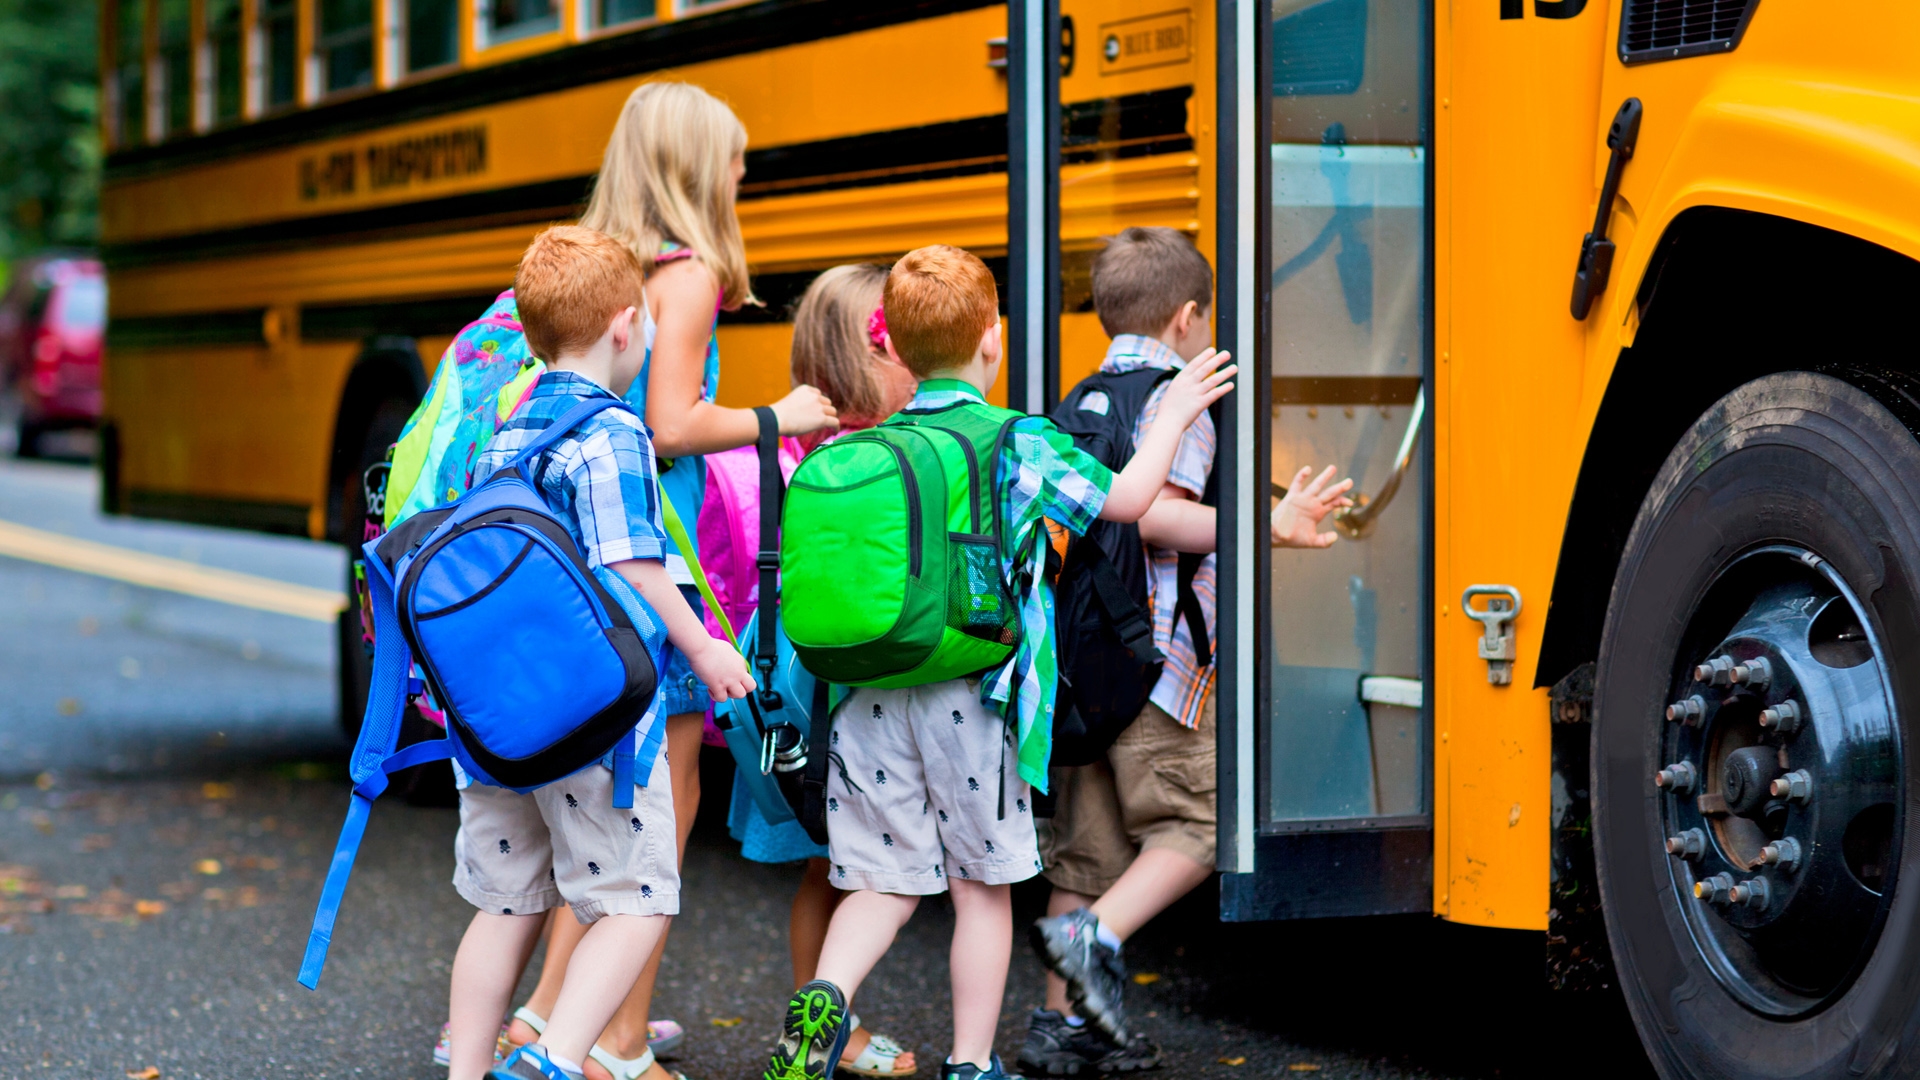 Children boarding a school bus in a neighborhood